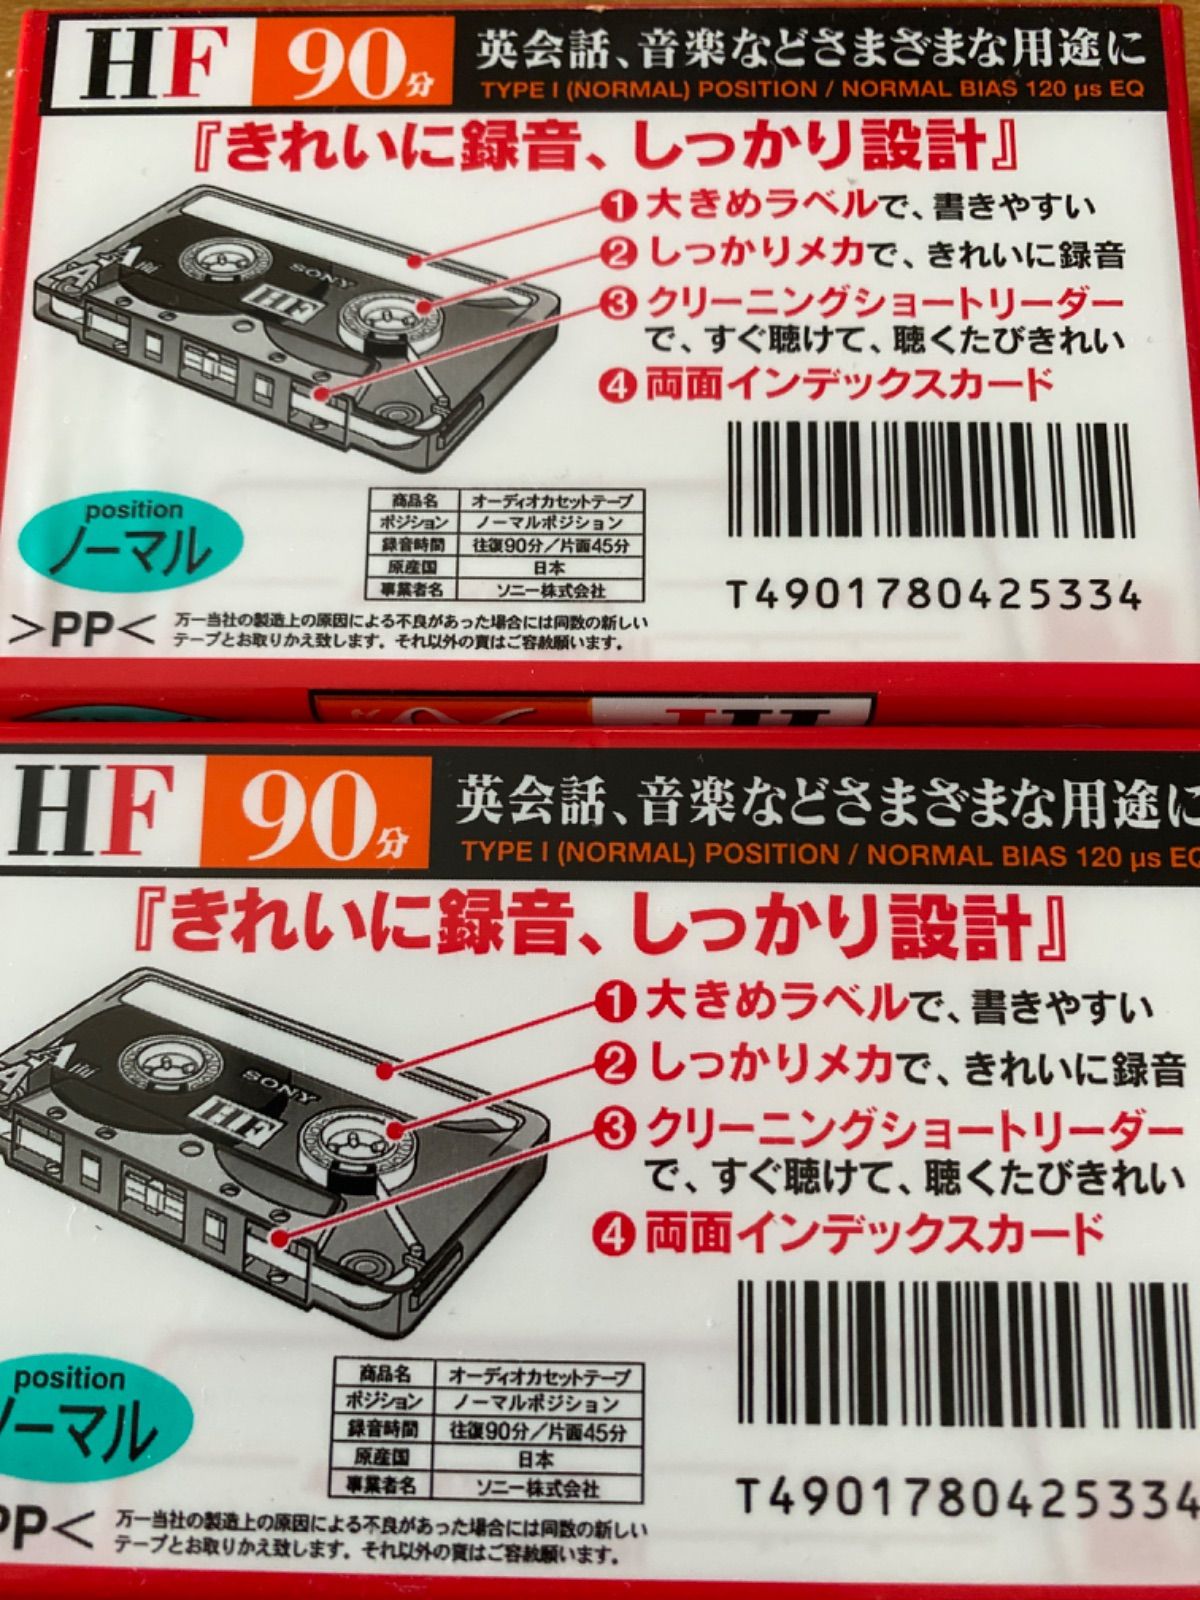 別倉庫からの配送】 SONY C-90HFA オーディオカセットテープ ノーマルポジション 10巻